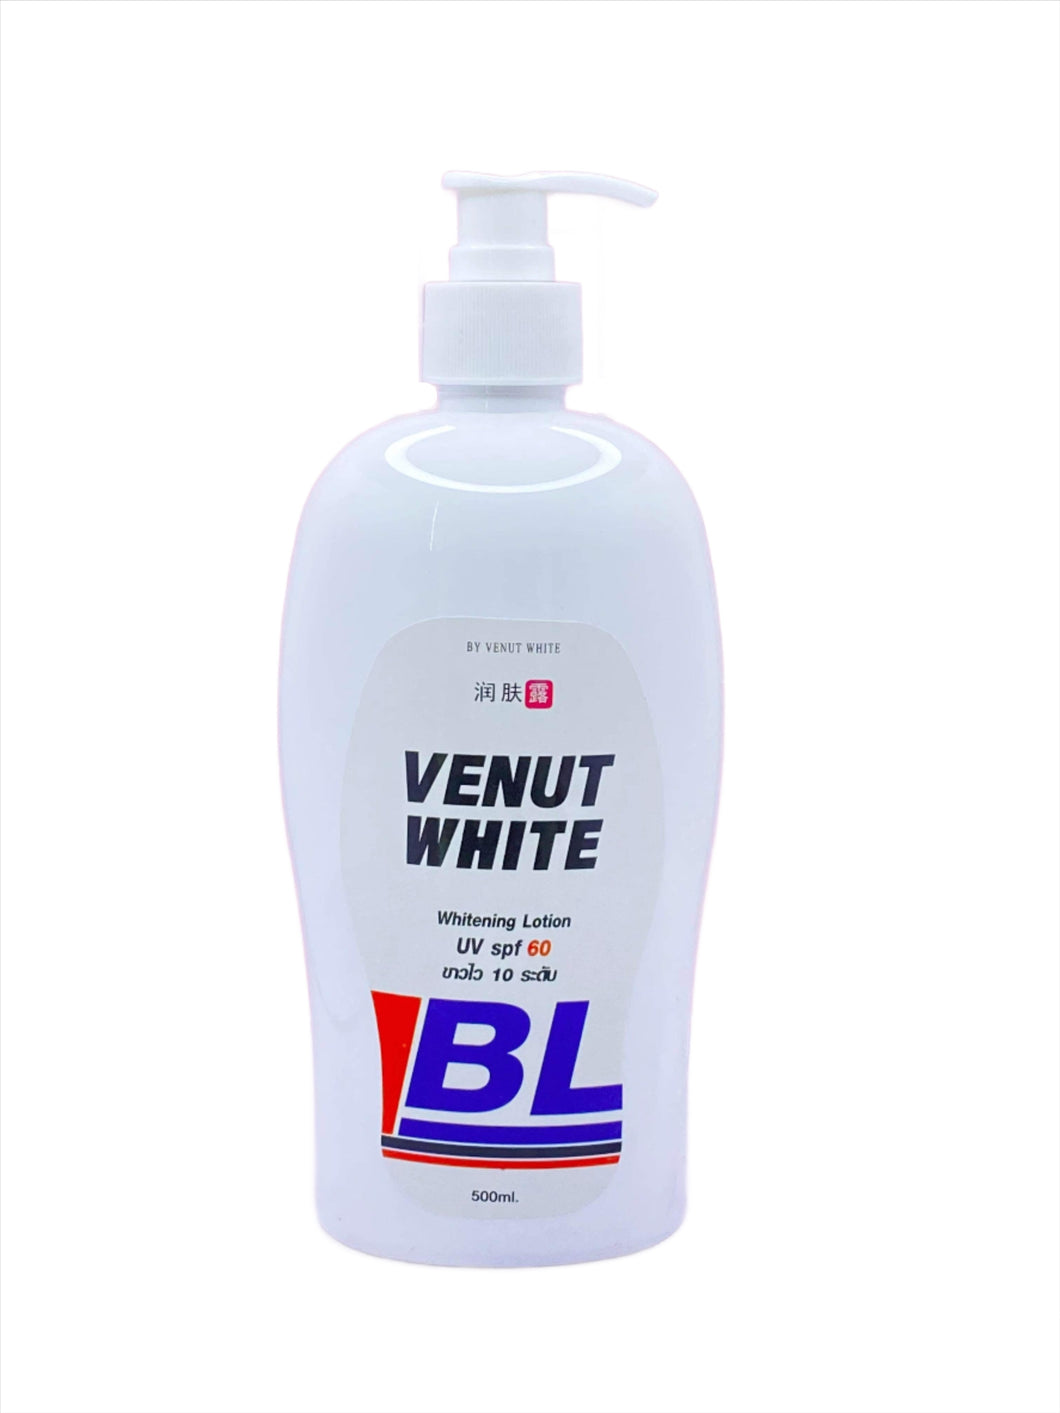 Venut White BL whitening Lotion SPF60 || 500ml 💯 Authentic